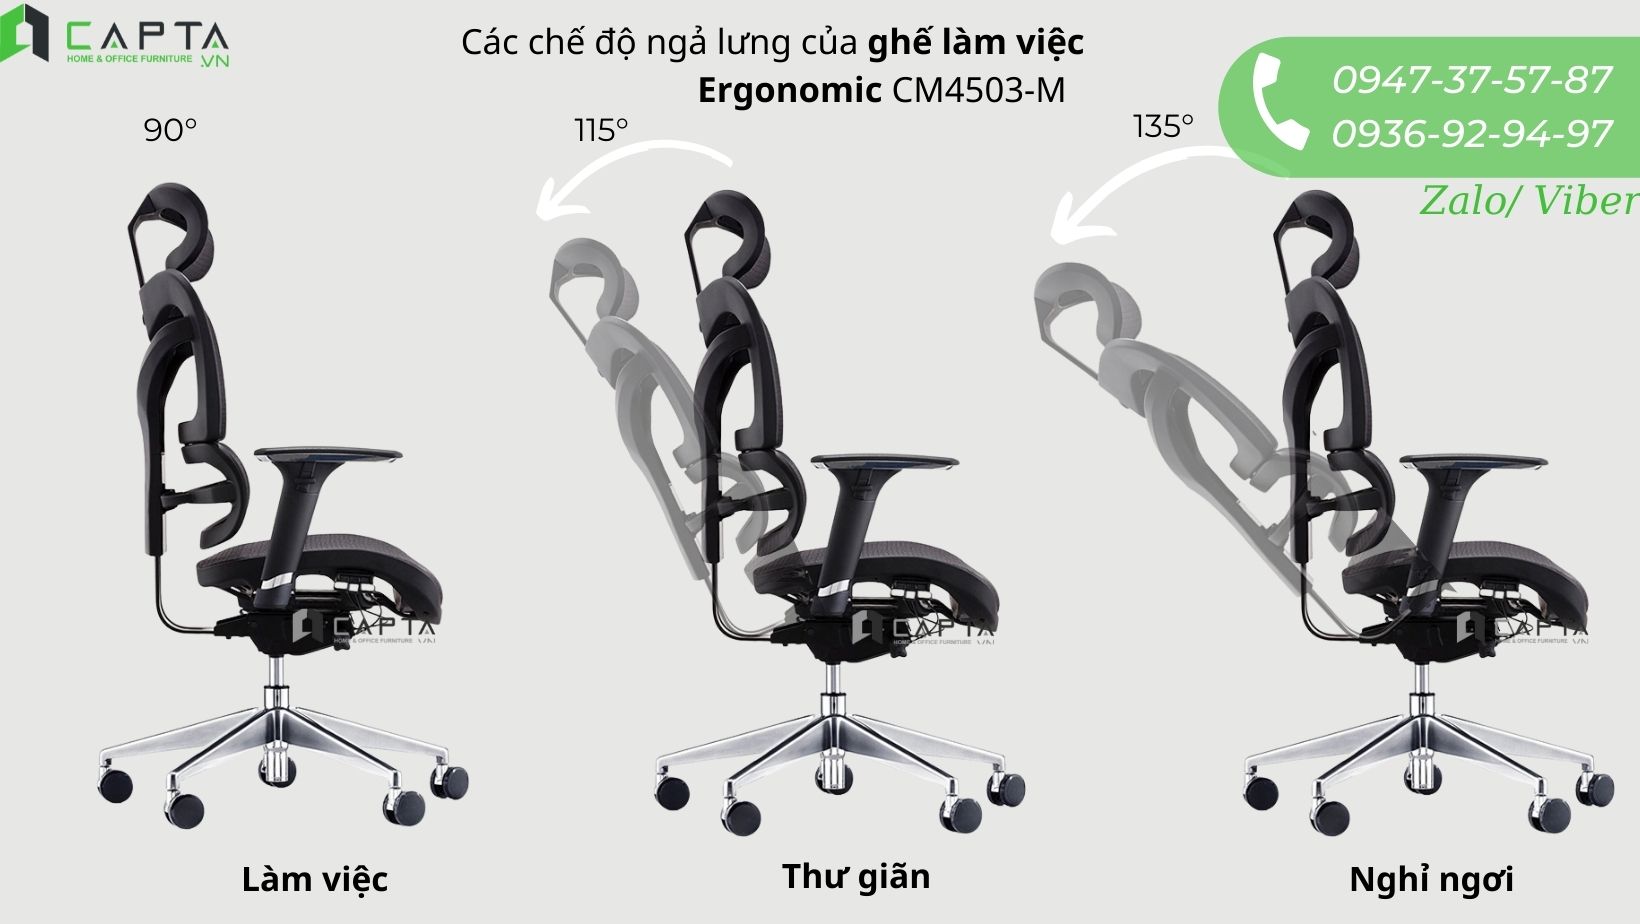 Ghế công thái học ergonomic CM4503-M có các chế độ ngả lưng linh hoạt